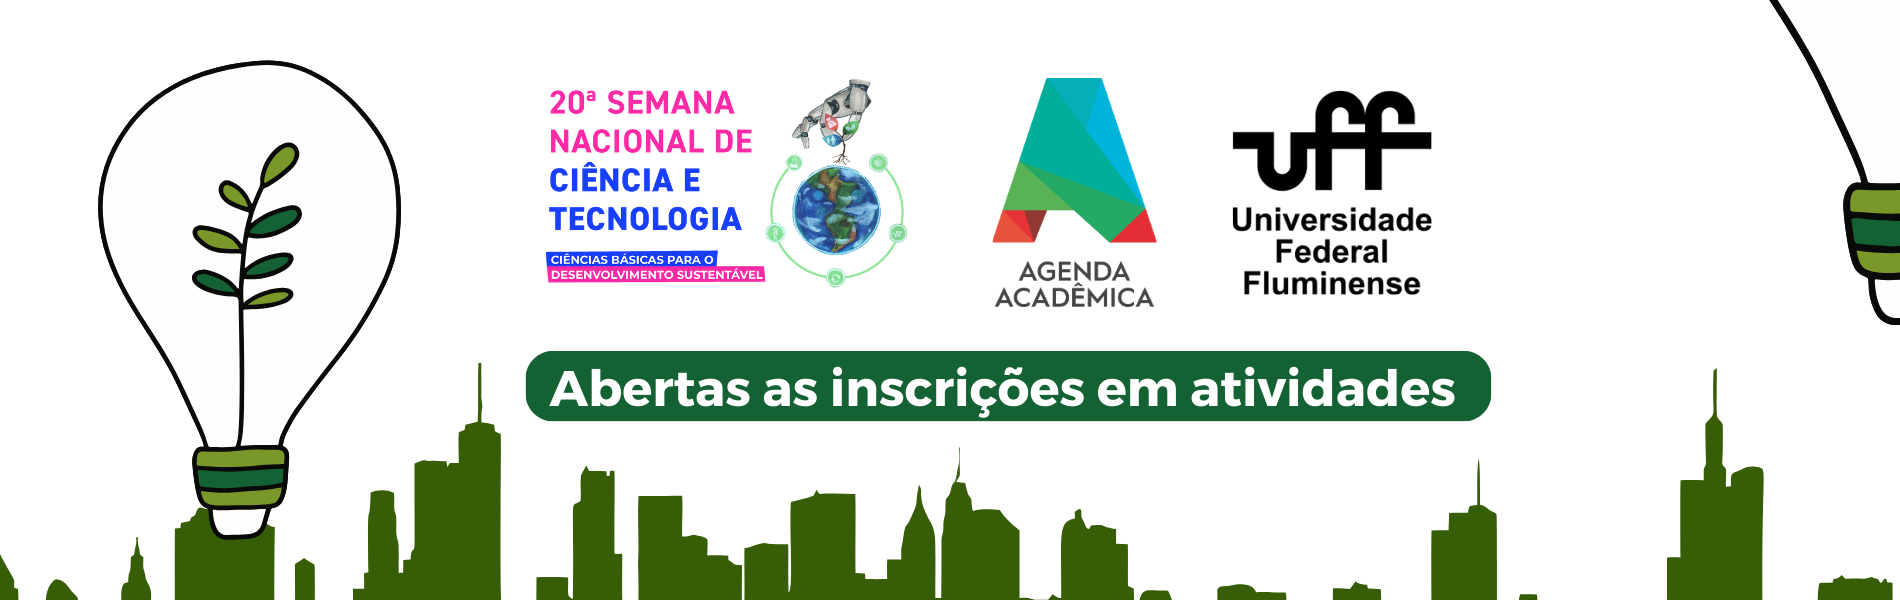 Imagem com os logos da Semana nacional de ciência e tecnologia, da agenda acadêmica e da UFF